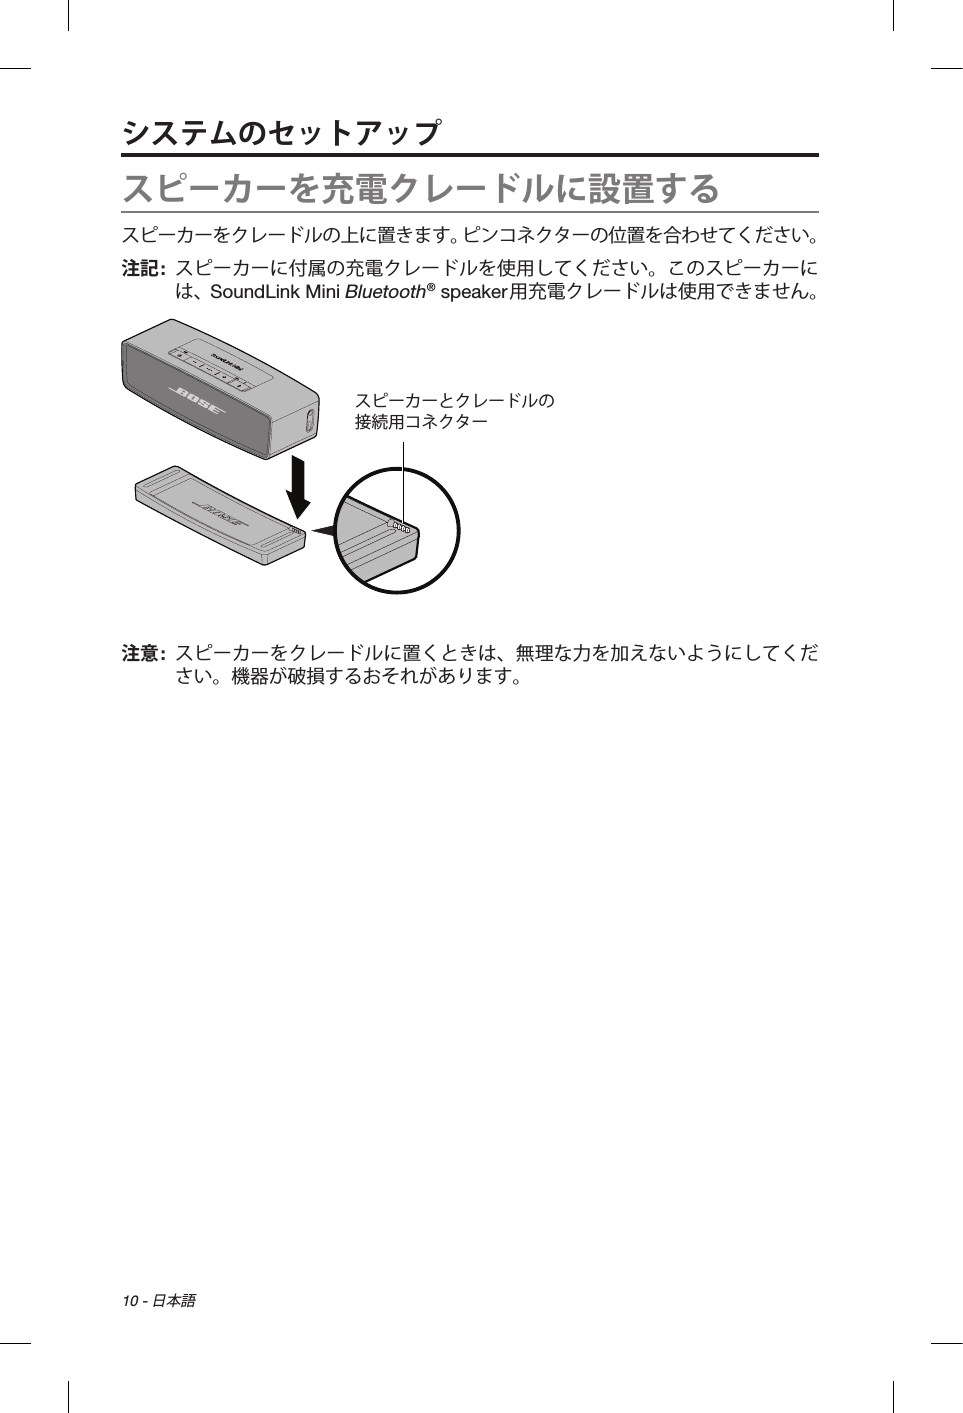 10 - 日本語スピーカーを充電クレードルに設置するスピーカーをクレードルの上に置きます。ピンコネクターの位置を合わせてください。注記:   スピーカーに付属の充電クレードルを使用してください。このスピーカーには、SoundLink Mini Bluetooth® speaker用充電クレードルは使用できません。スピーカーとクレードルの 接続用コネクター注意:   スピーカーをクレードルに置くときは、無理な力を加えないようにしてください。機器が破損するおそれがあります。システムのセットアップ